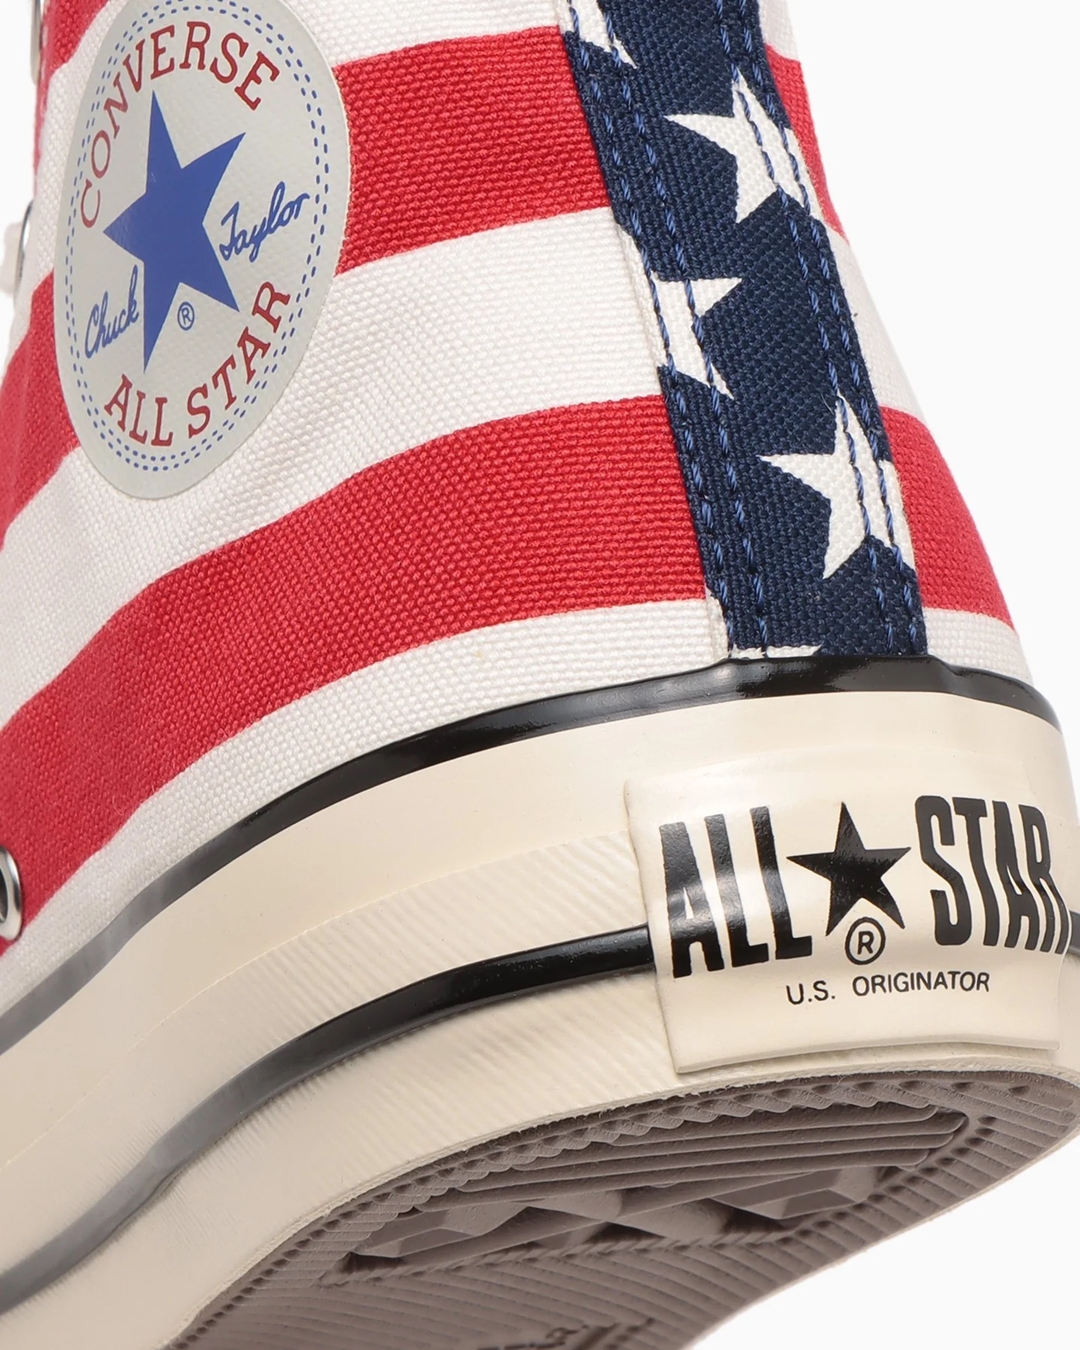 【2/24 発売】アメリカ国旗であり、コンバースを代表する柄の一つである「スターズ＆バーズ」のプリントを採用した CONVERSE ALL STAR US STARS&BARS HI (コンバース オールスター US スターズ&バーズ)